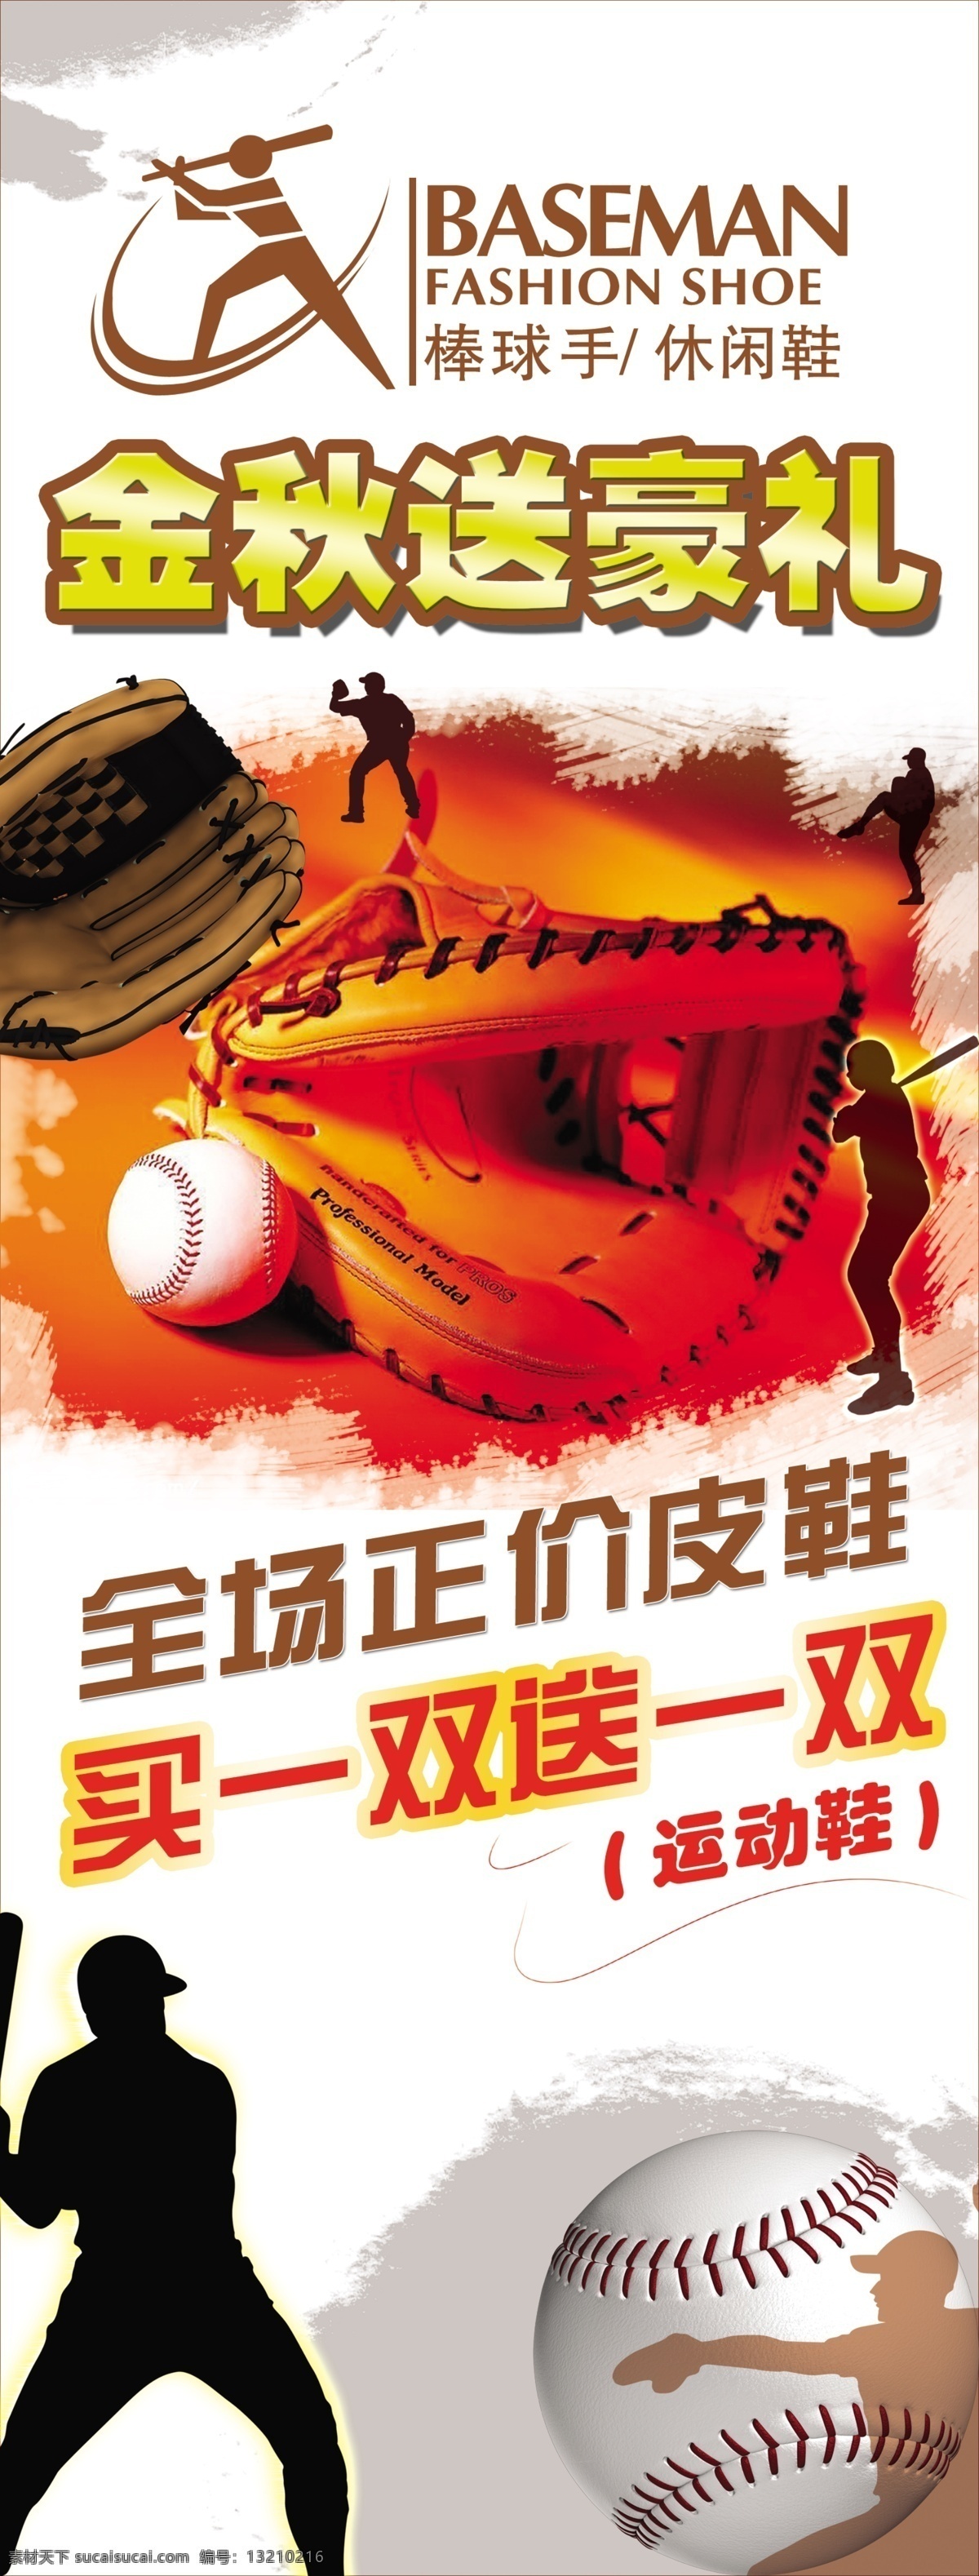 棒球手 棒球手鞋业 棒球运动 户外运动 棒球手标志 金秋送豪礼 棒球手活动 海报 广告设计模板 源文件